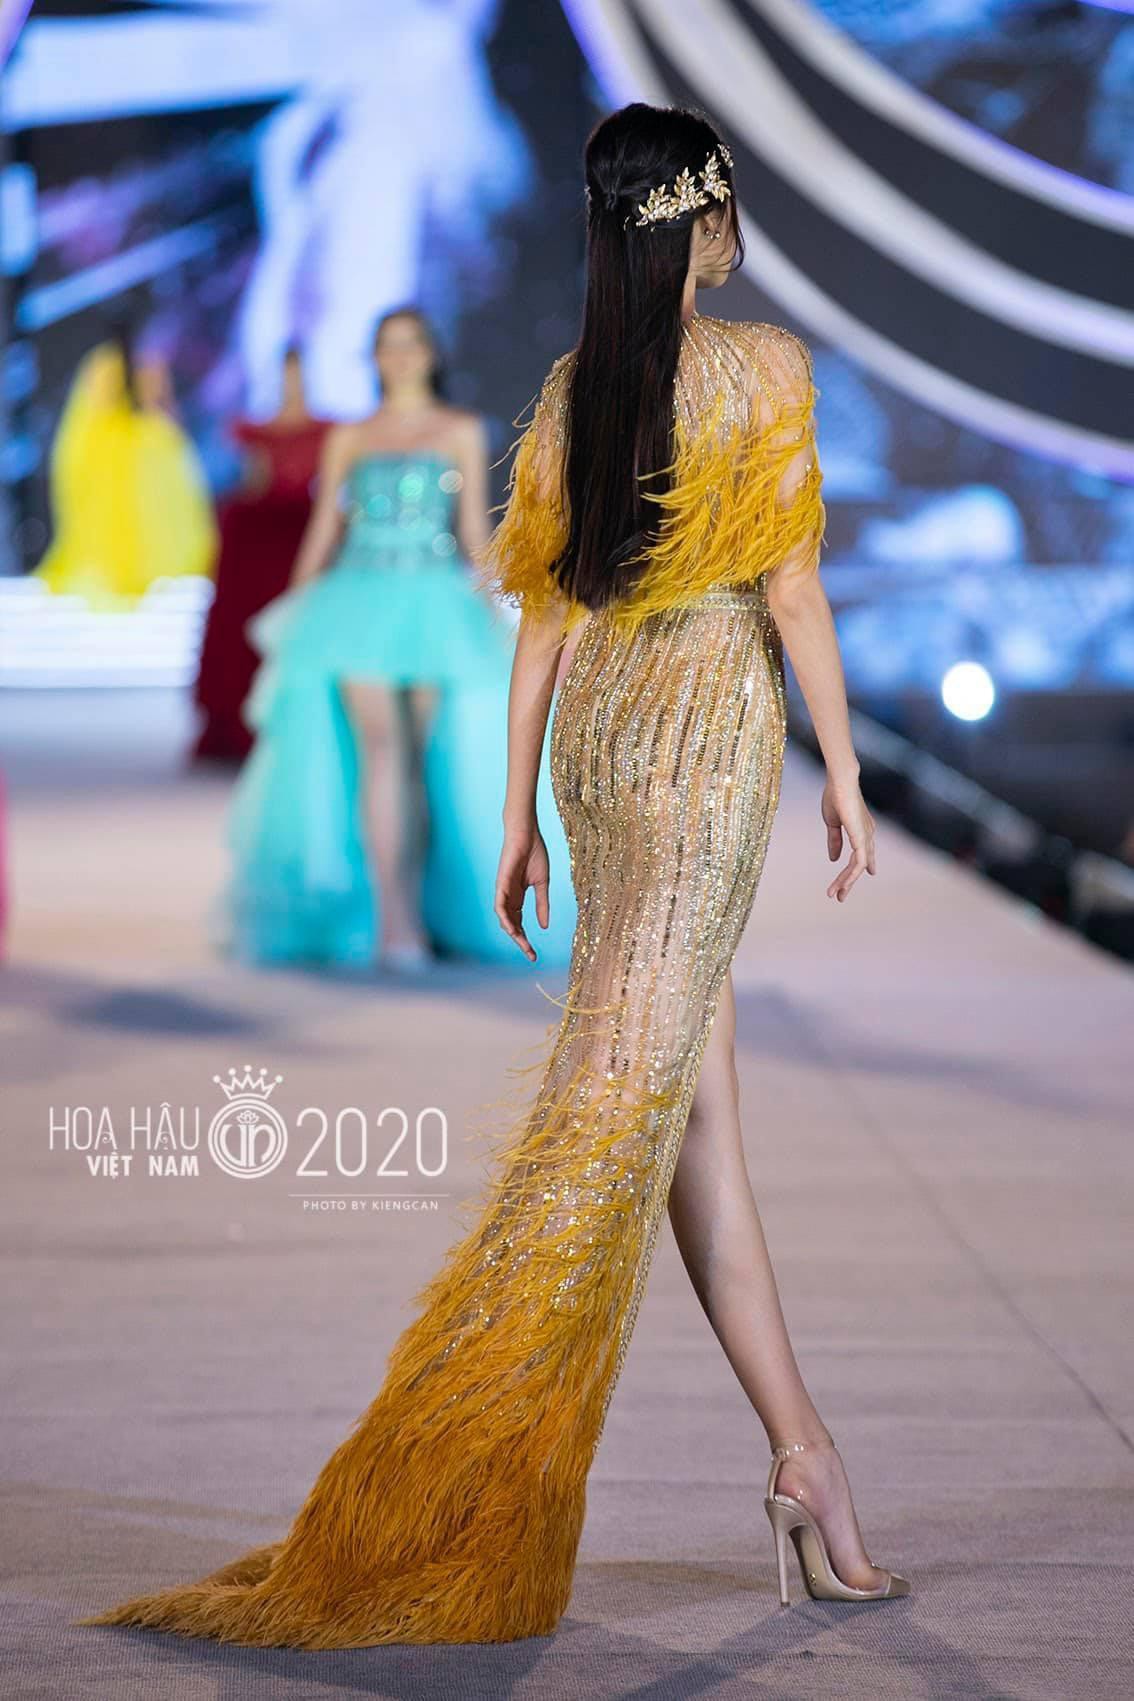 Diện lại váy lông vũ của Hoa hậu Ngọc Hân và Á hậu Ngọc Thảo, Phương Oanh vẫn đẹp gây mê - Ảnh 16.